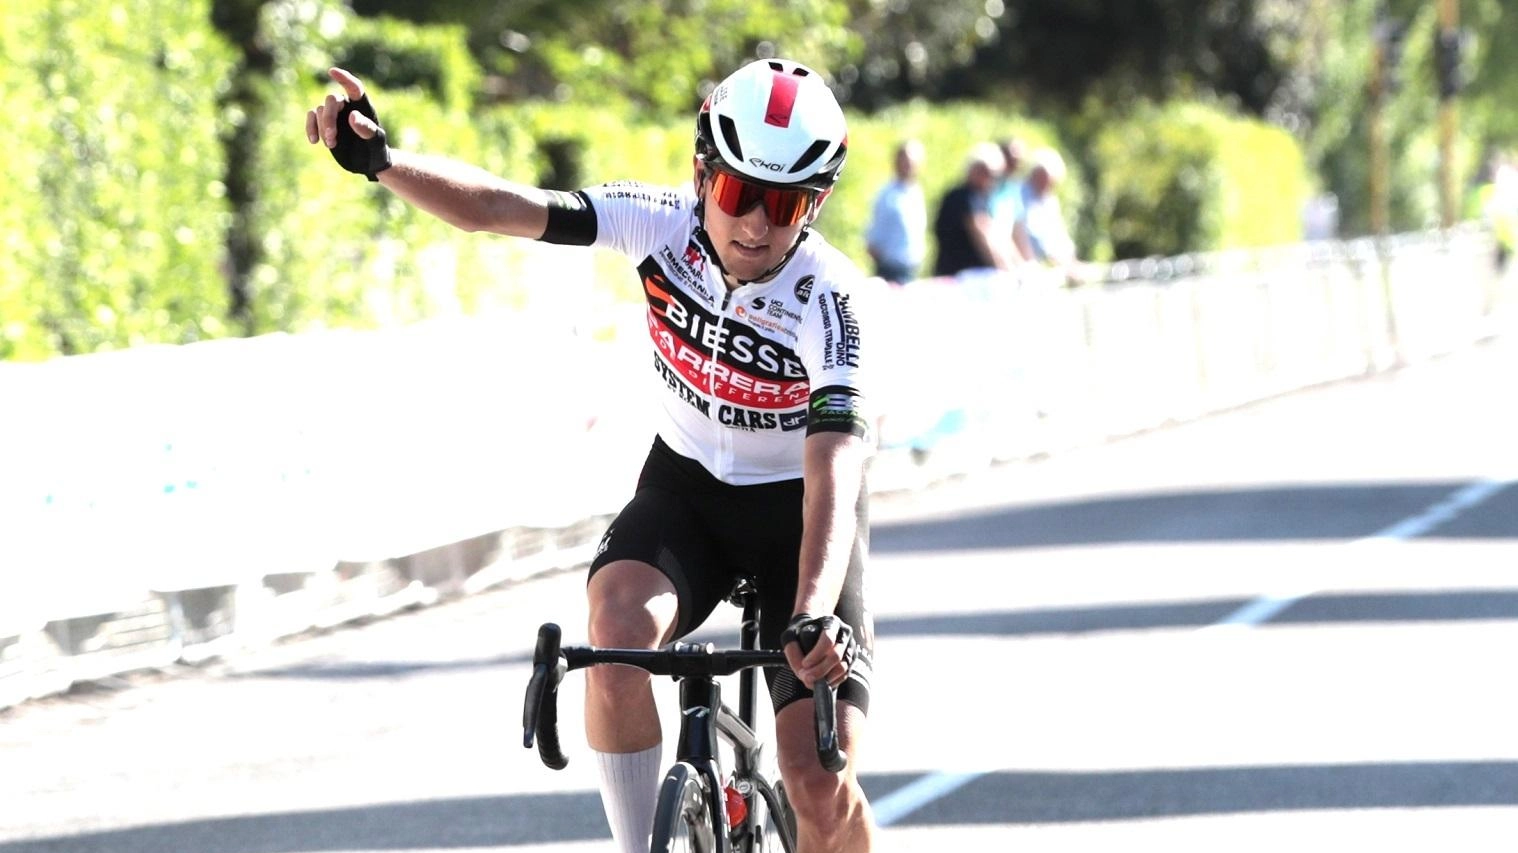 Francesco Galimberti, corridore di Giussano, vince il Gran Premio città di Pontedera per dilettanti con un assolo vincente. La sua esperienza al Giro d’Abruzzo con i professionisti lo ha preparato per questa vittoria inaspettata.